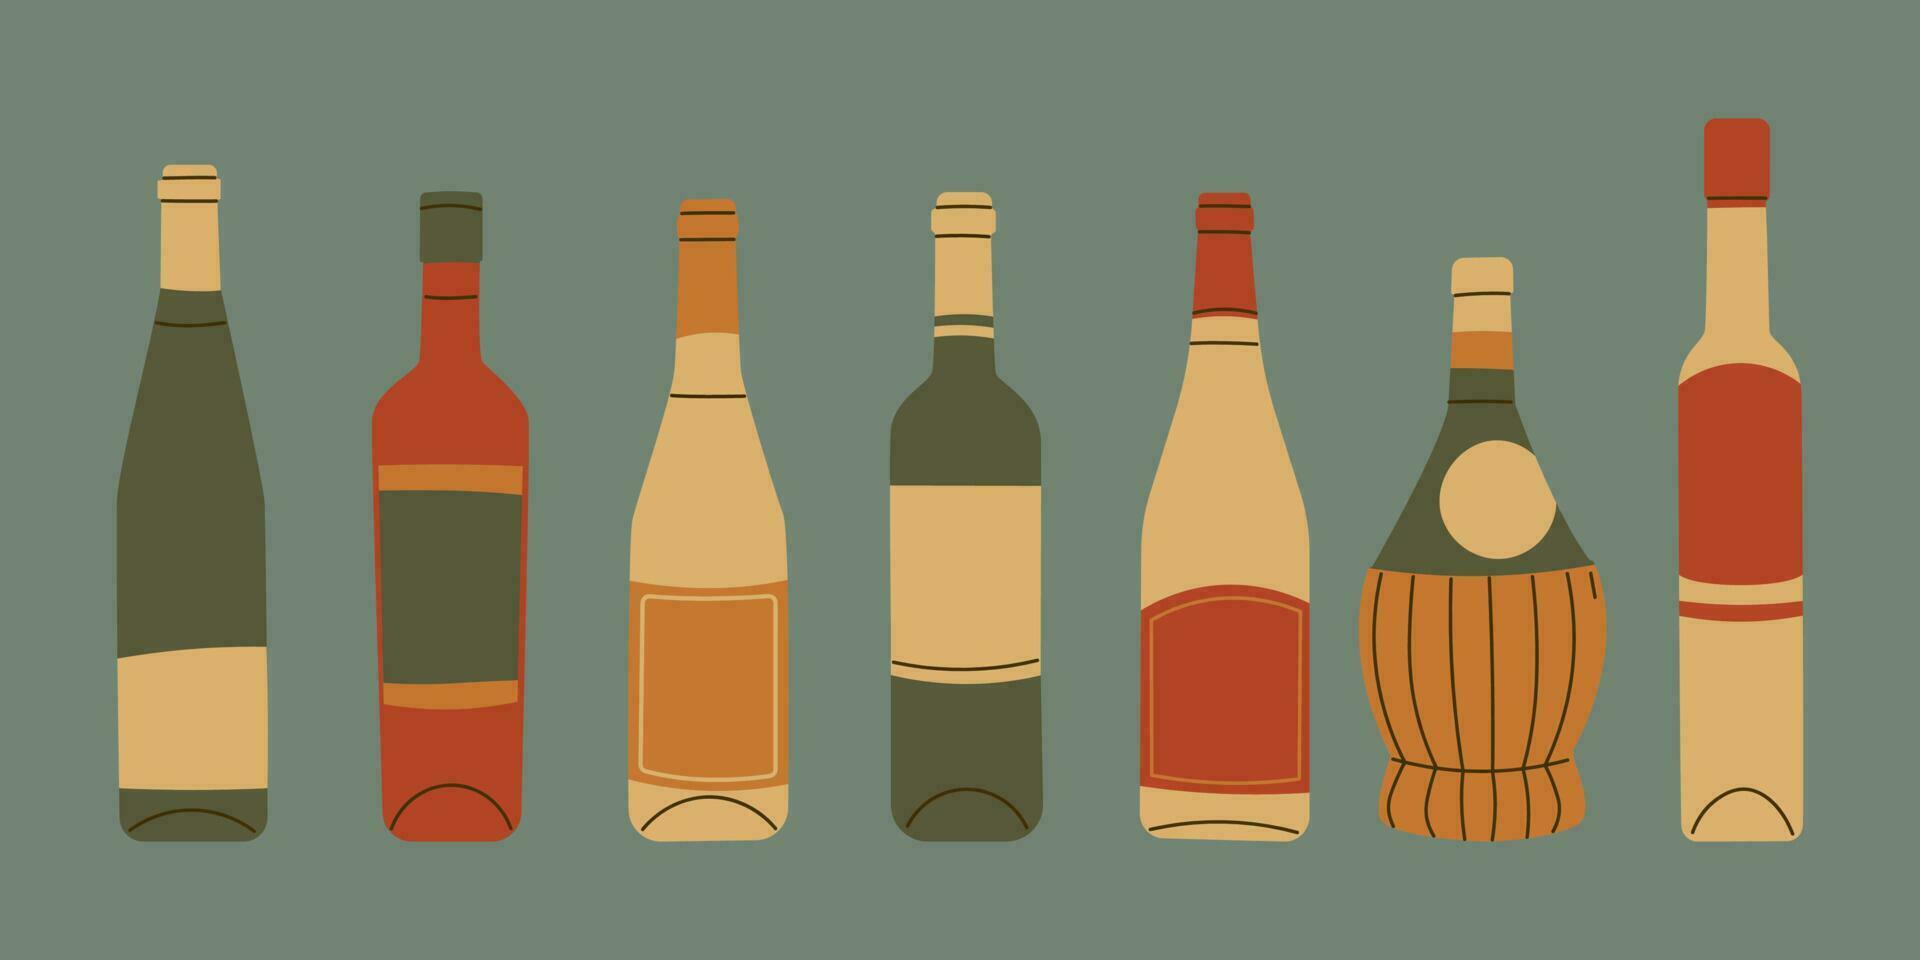 conjunto do vinho garrafas do diferente formas e tipos. vintage cores, vetor ilustração.